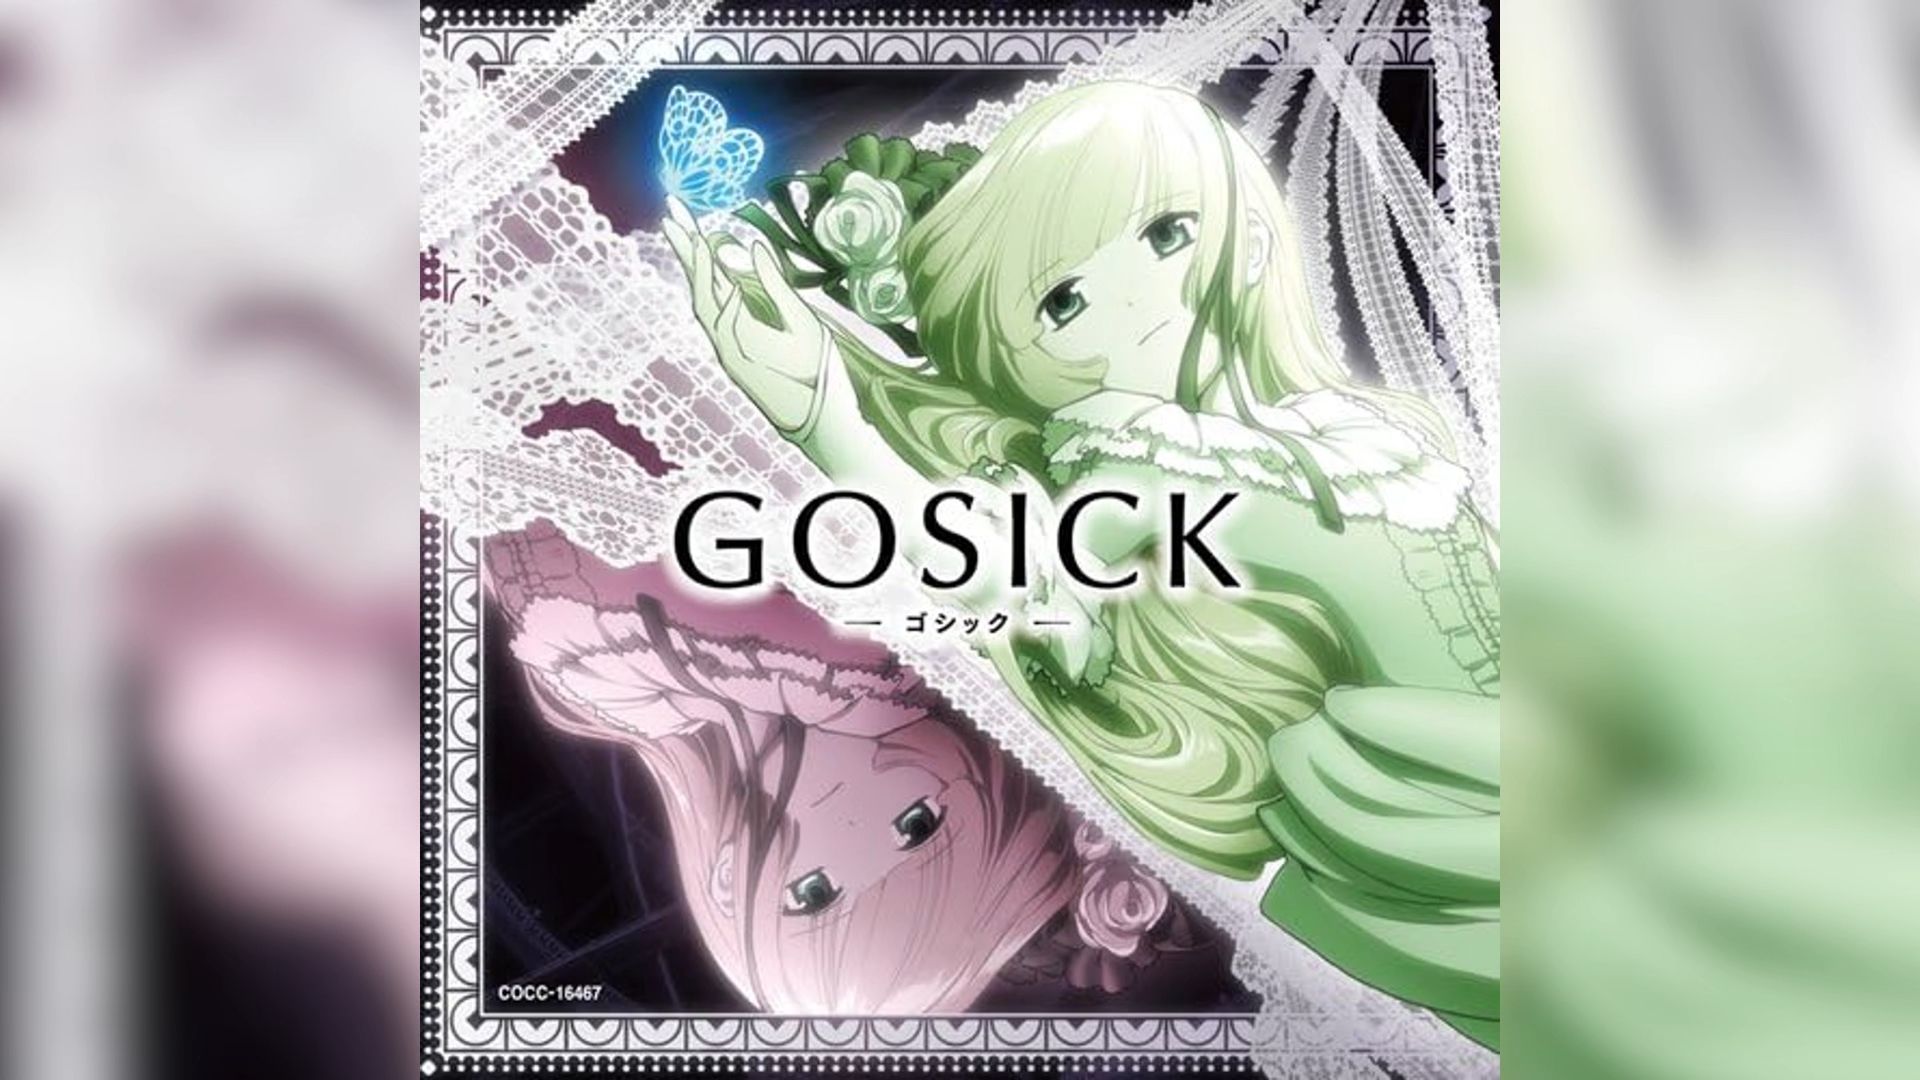 gosick ed 片尾曲 resuscitated hope unity